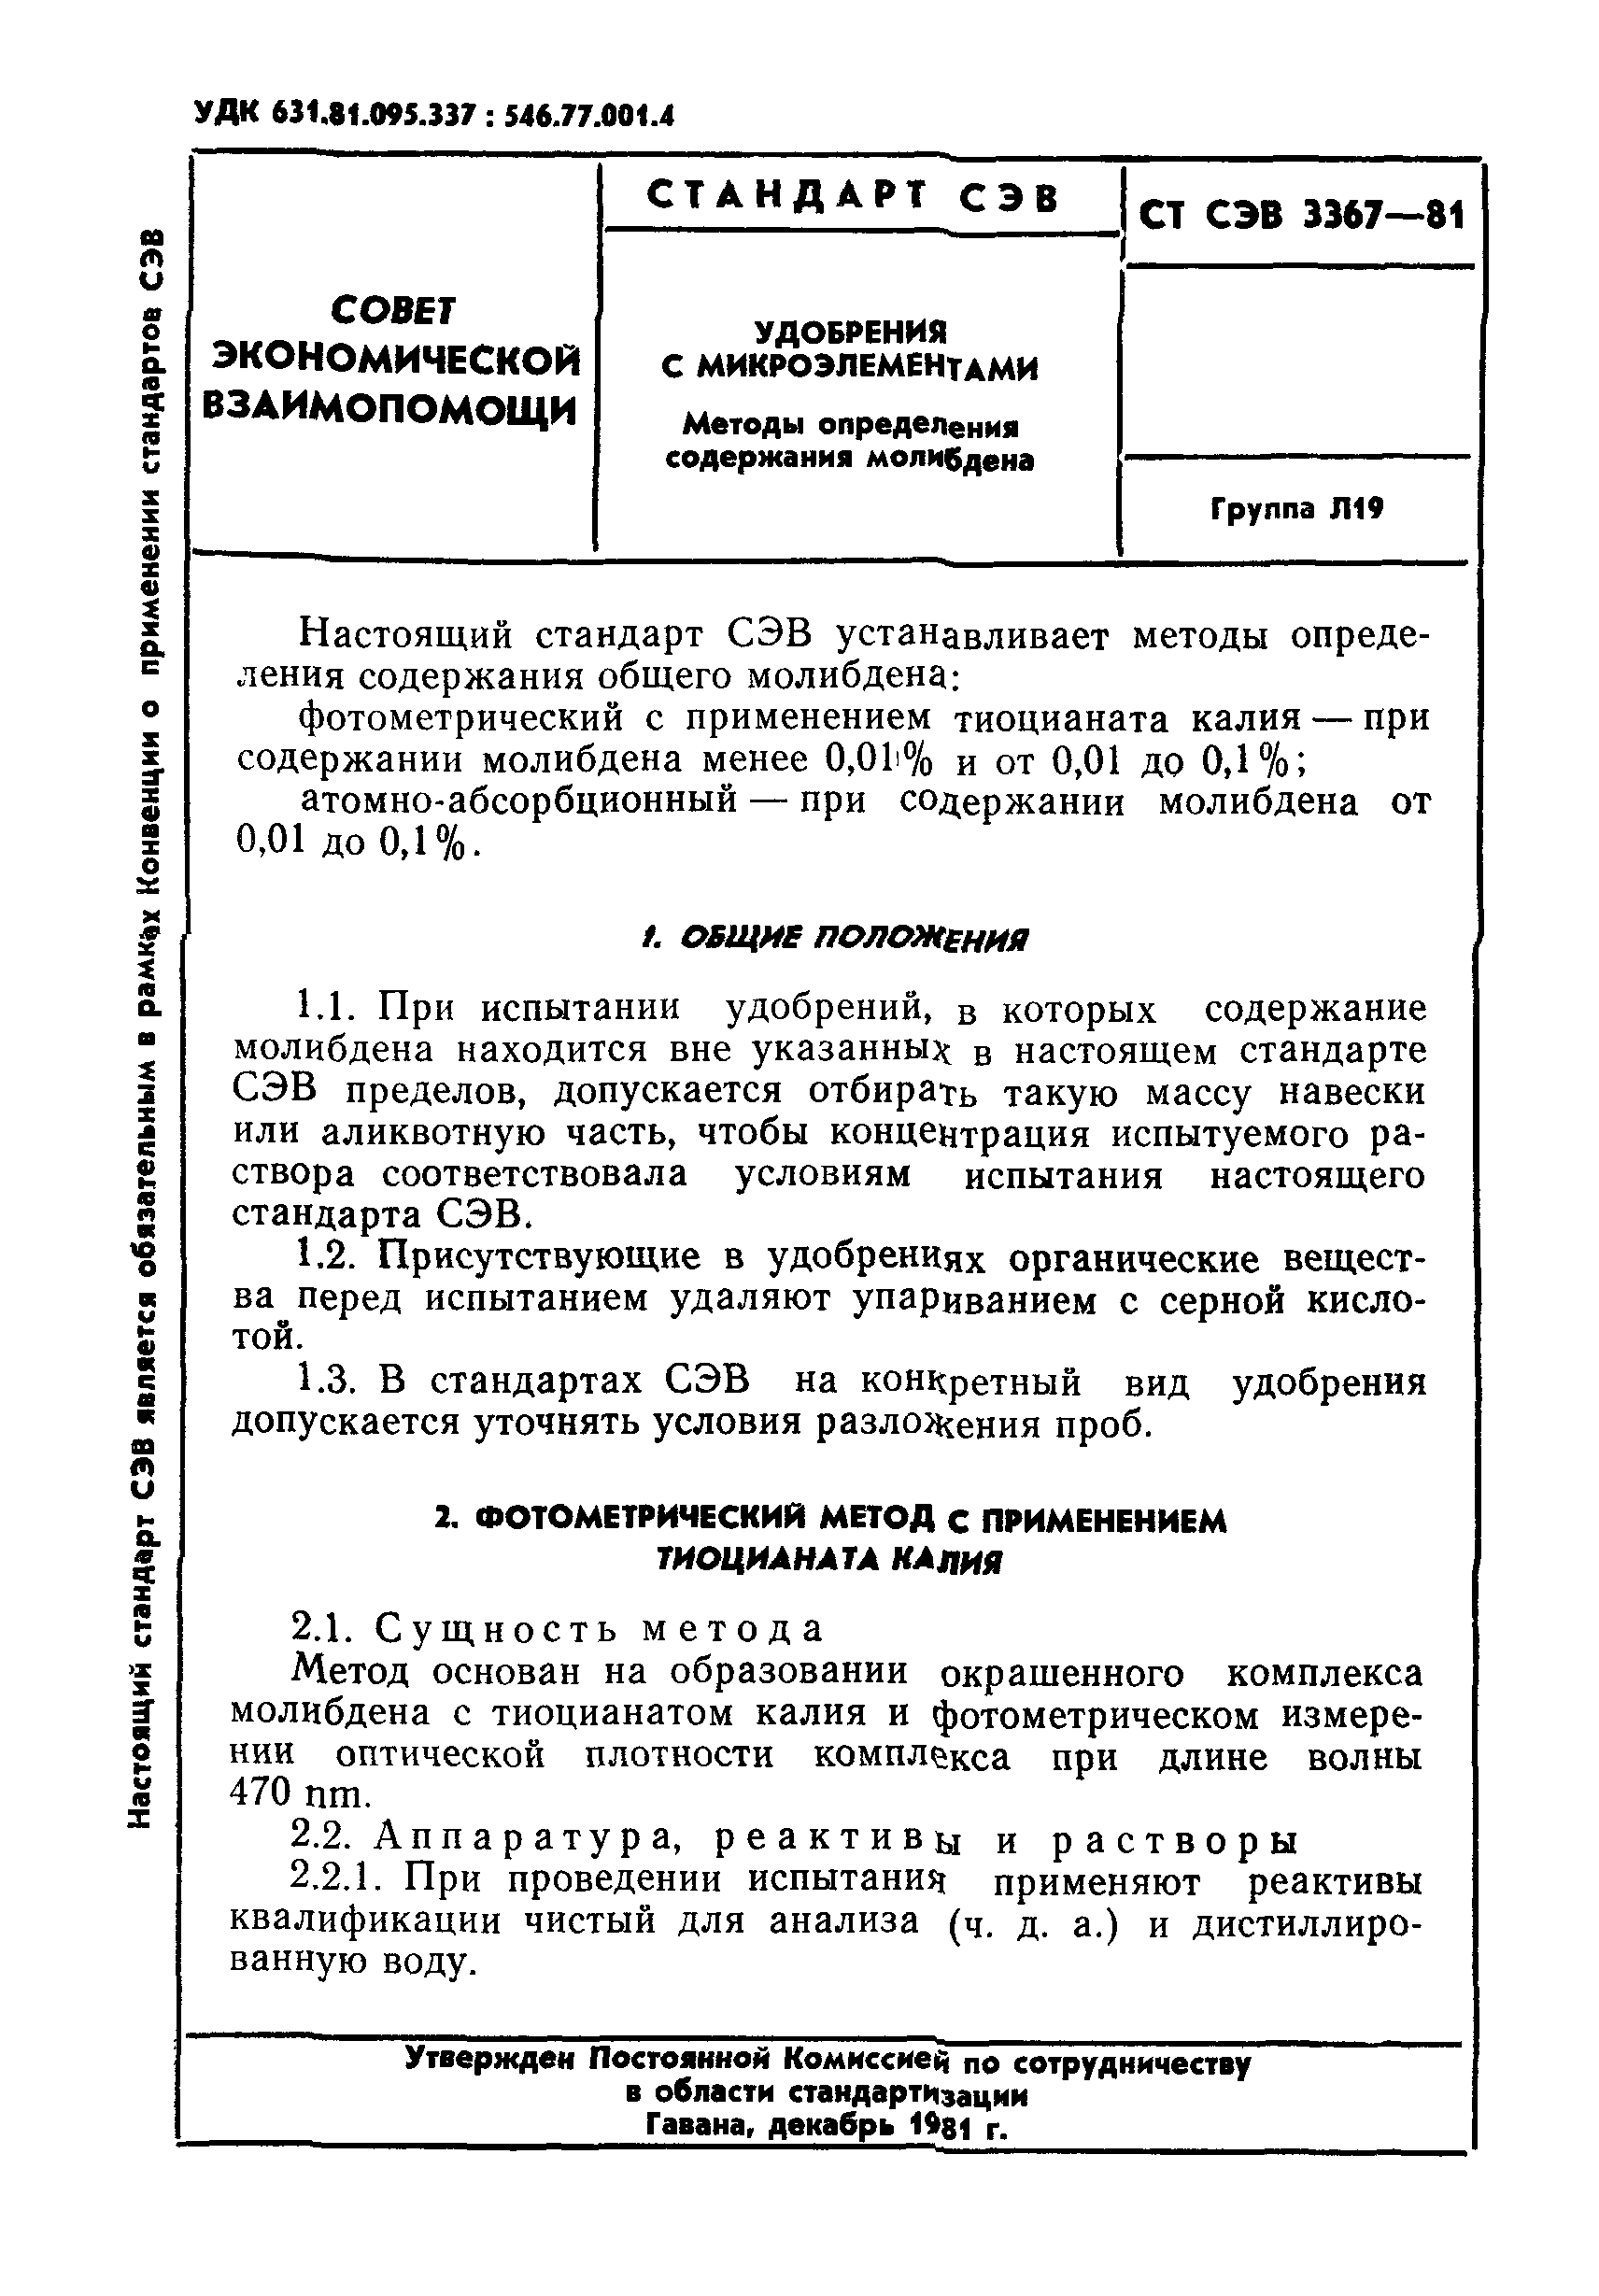 СТ СЭВ 3367-81